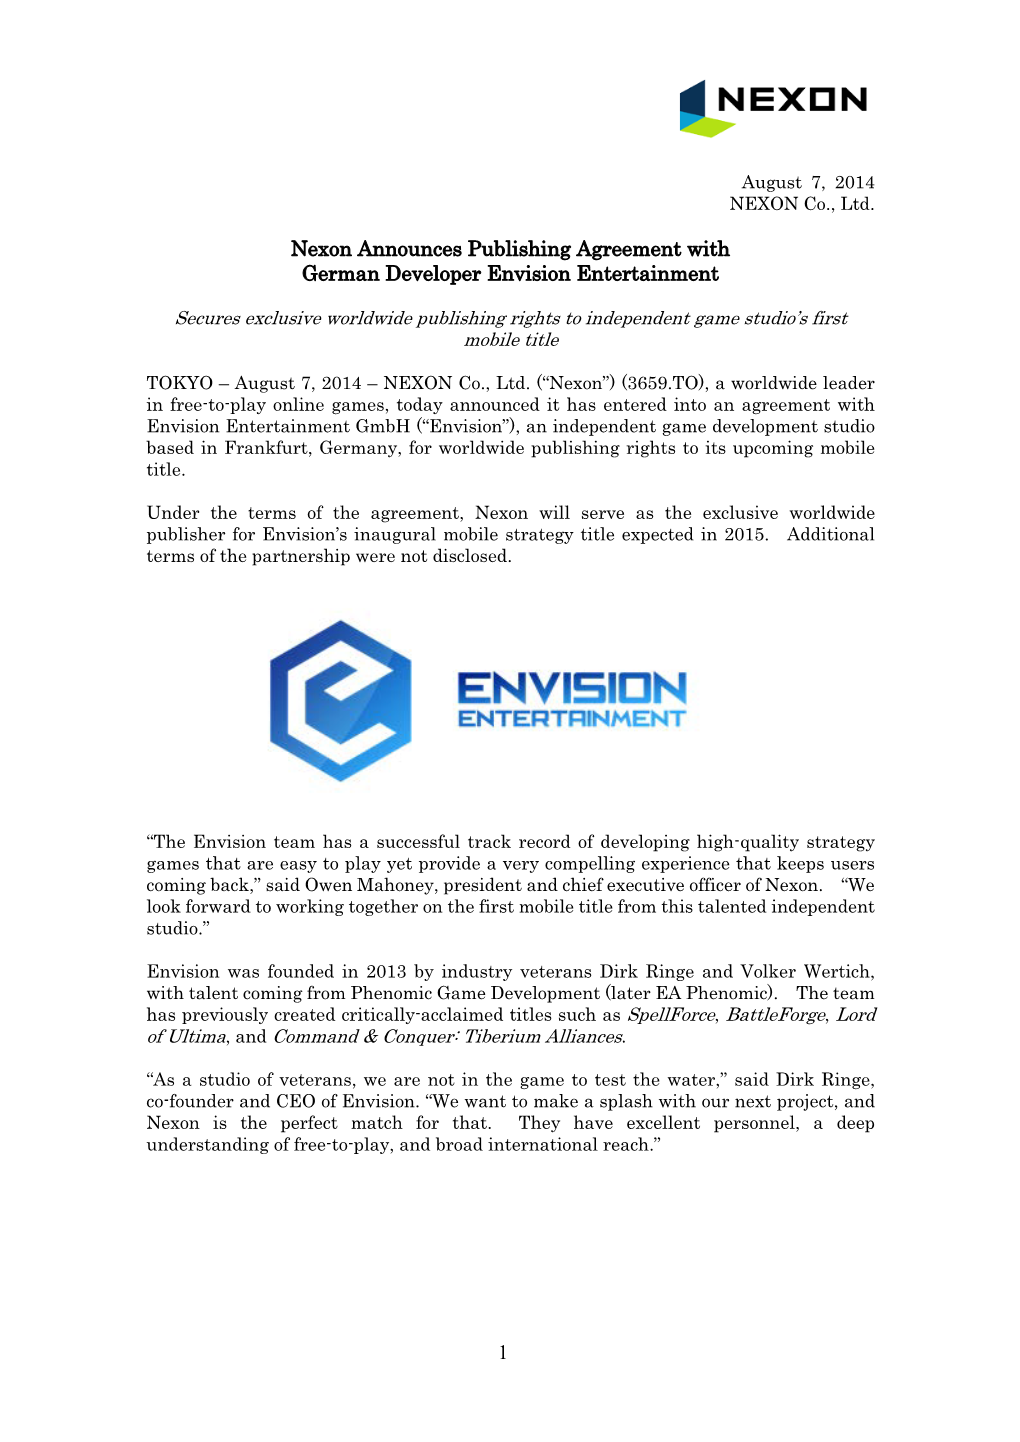 Nexon Announces Publishing Agreement with German Developer Envision Entertainment 1